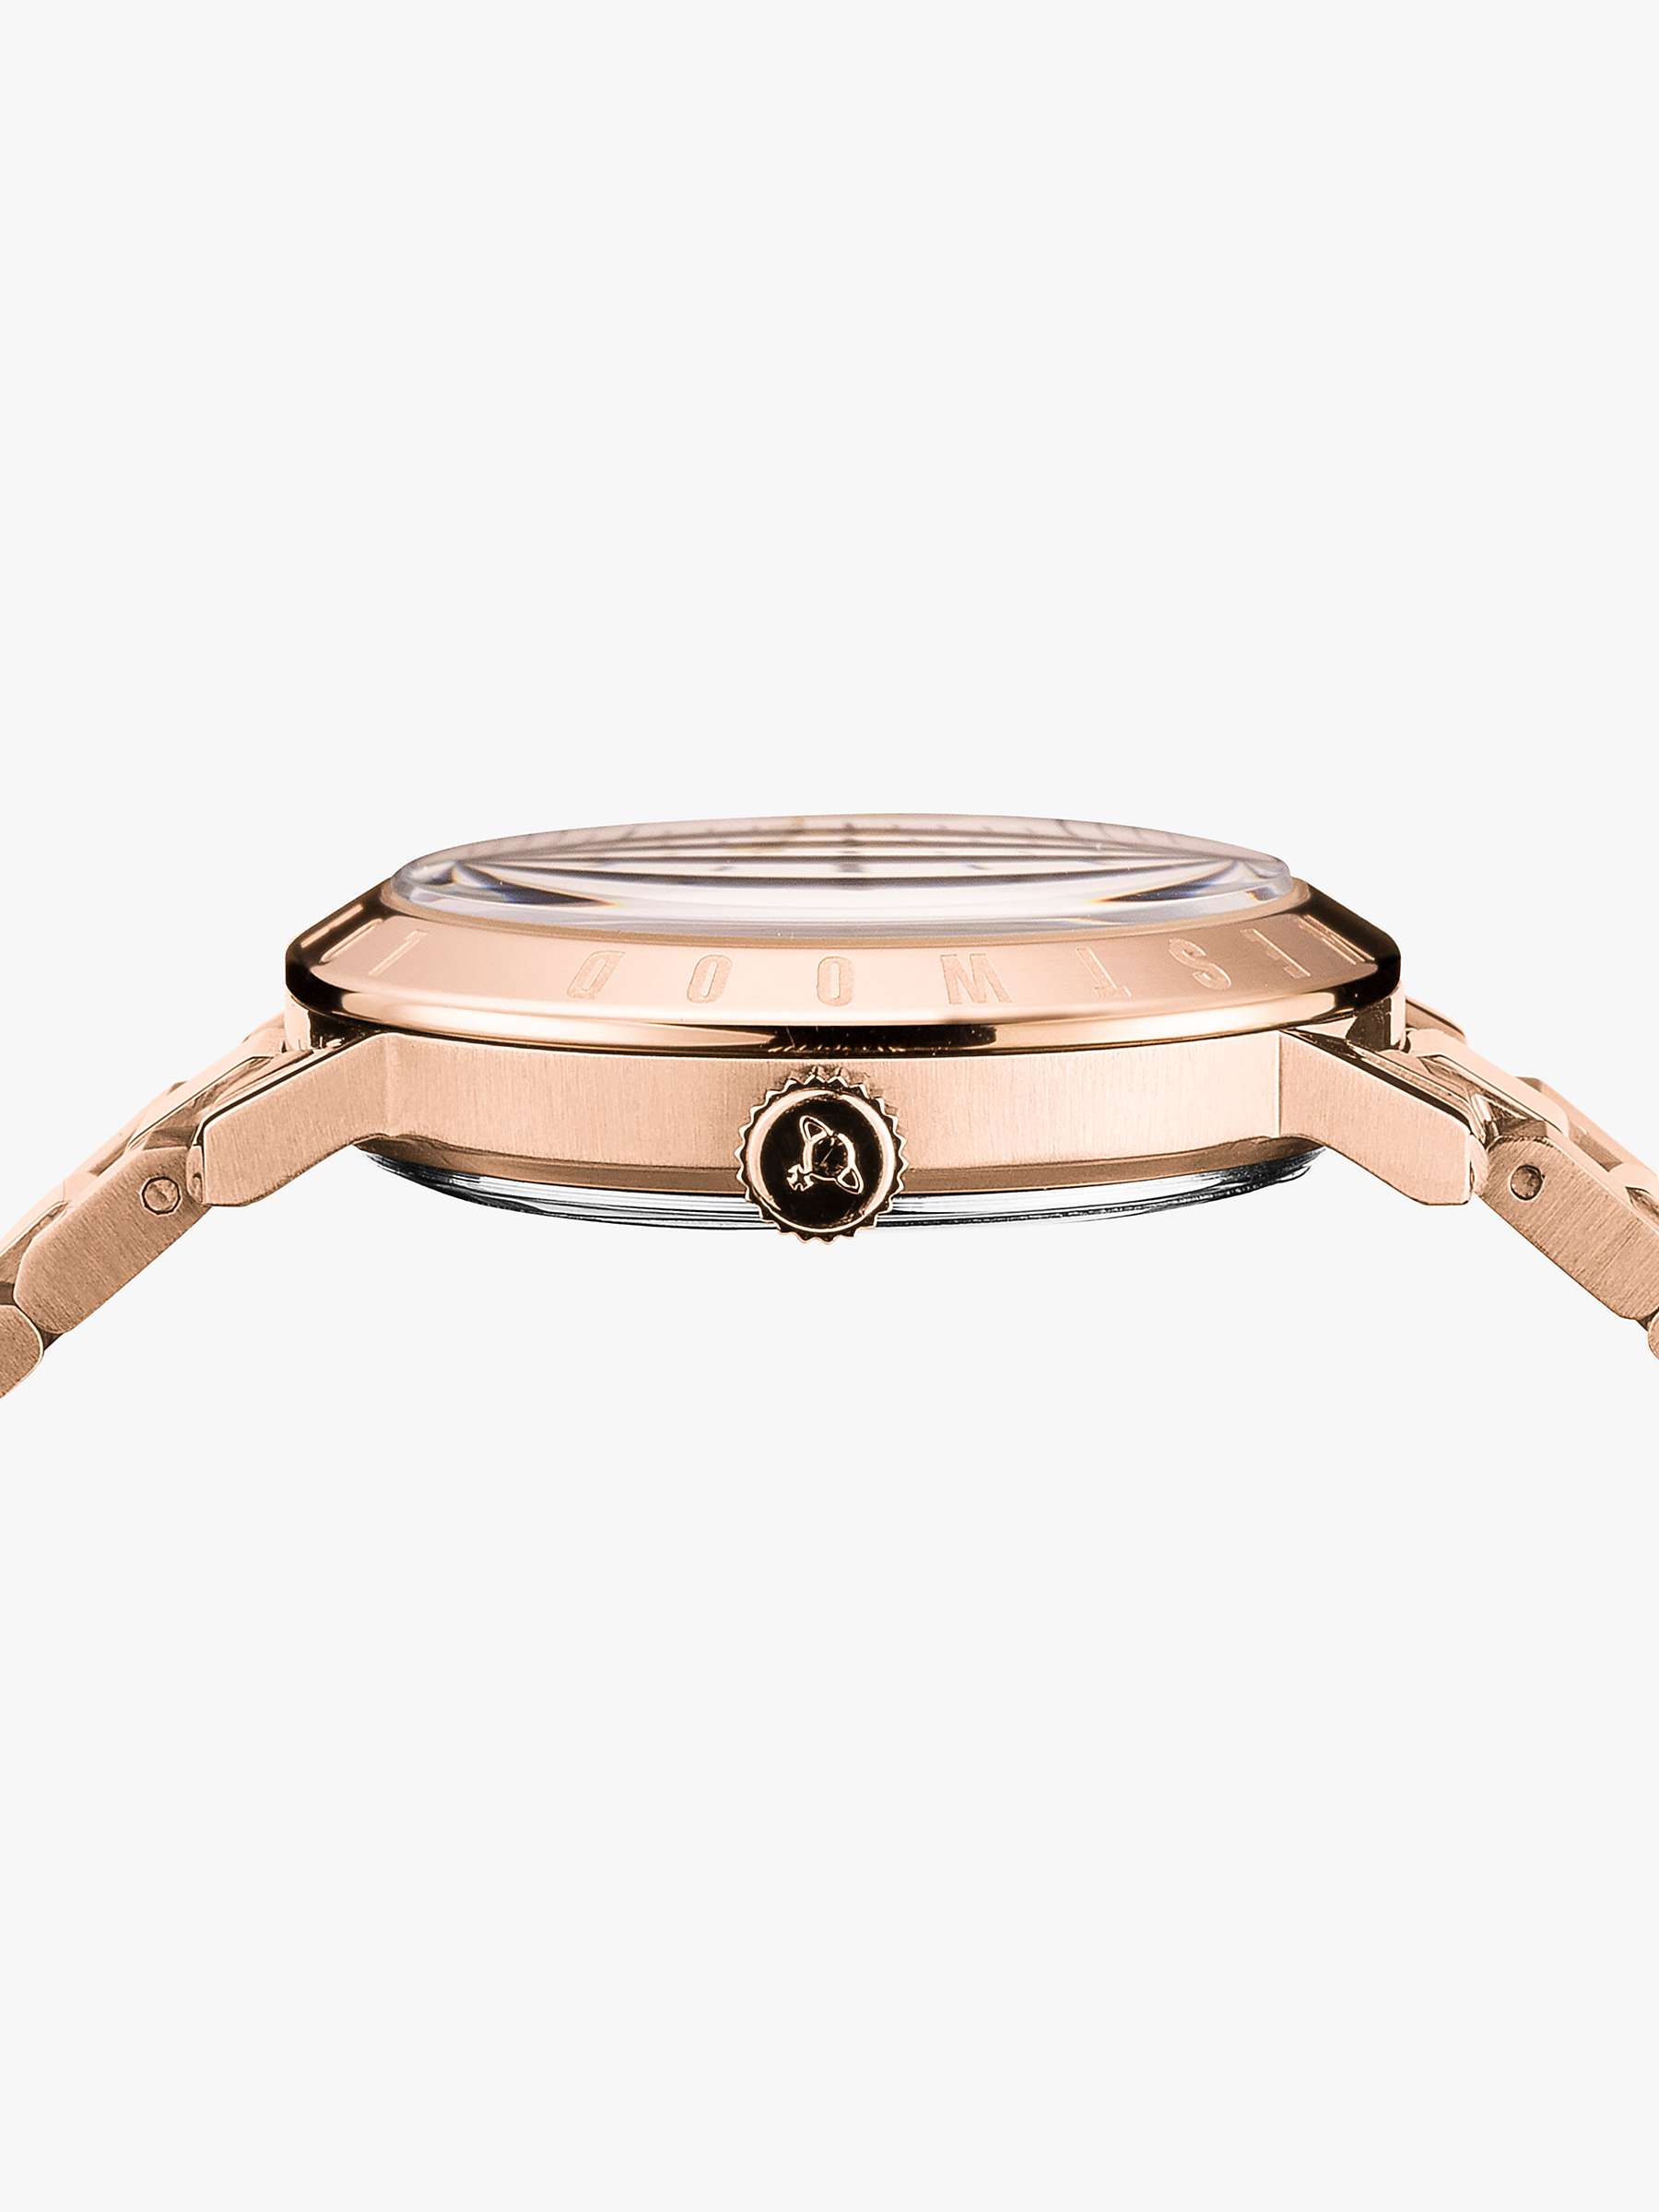 Buy Vivienne Westwood Women's Bloomsbury Date Bracelet Strap Watch Online at johnlewis.com